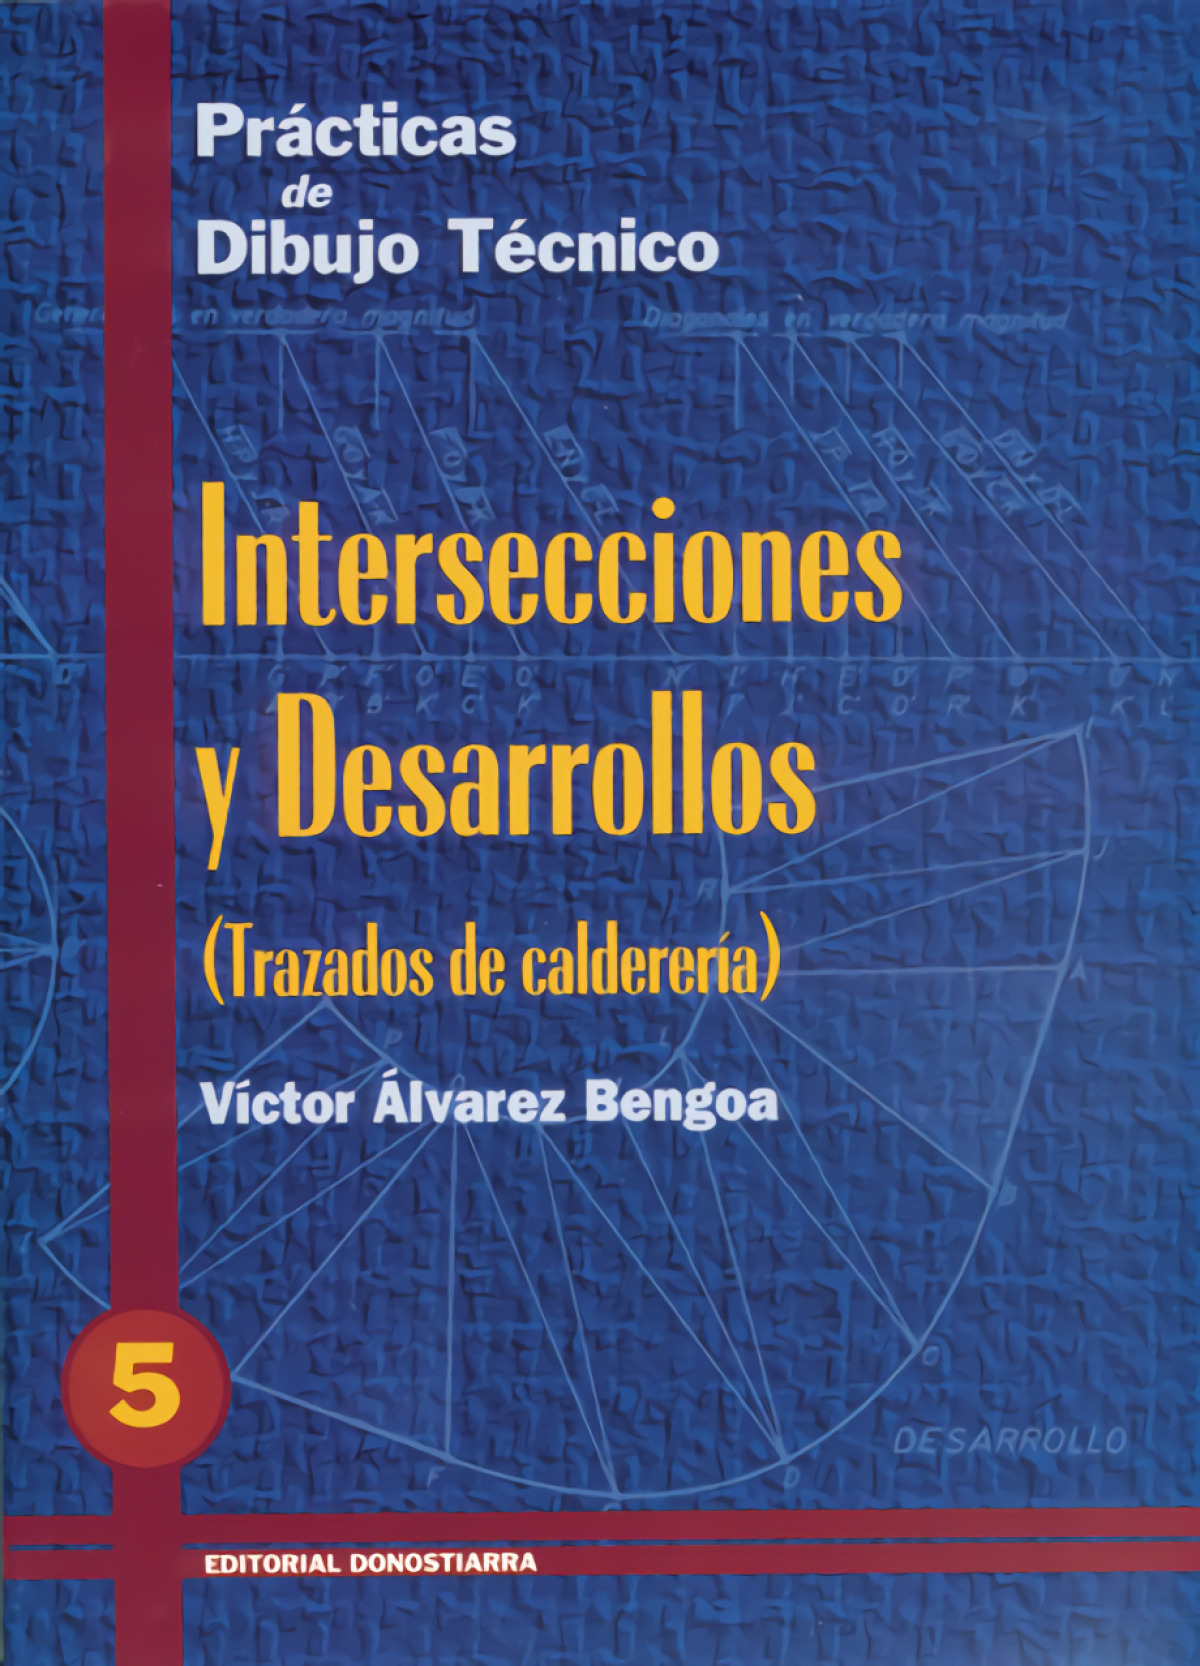 Pract.dibujo tecnico 5.intersecciones y desarrollodon - Álvarez Bengoa, Víctor